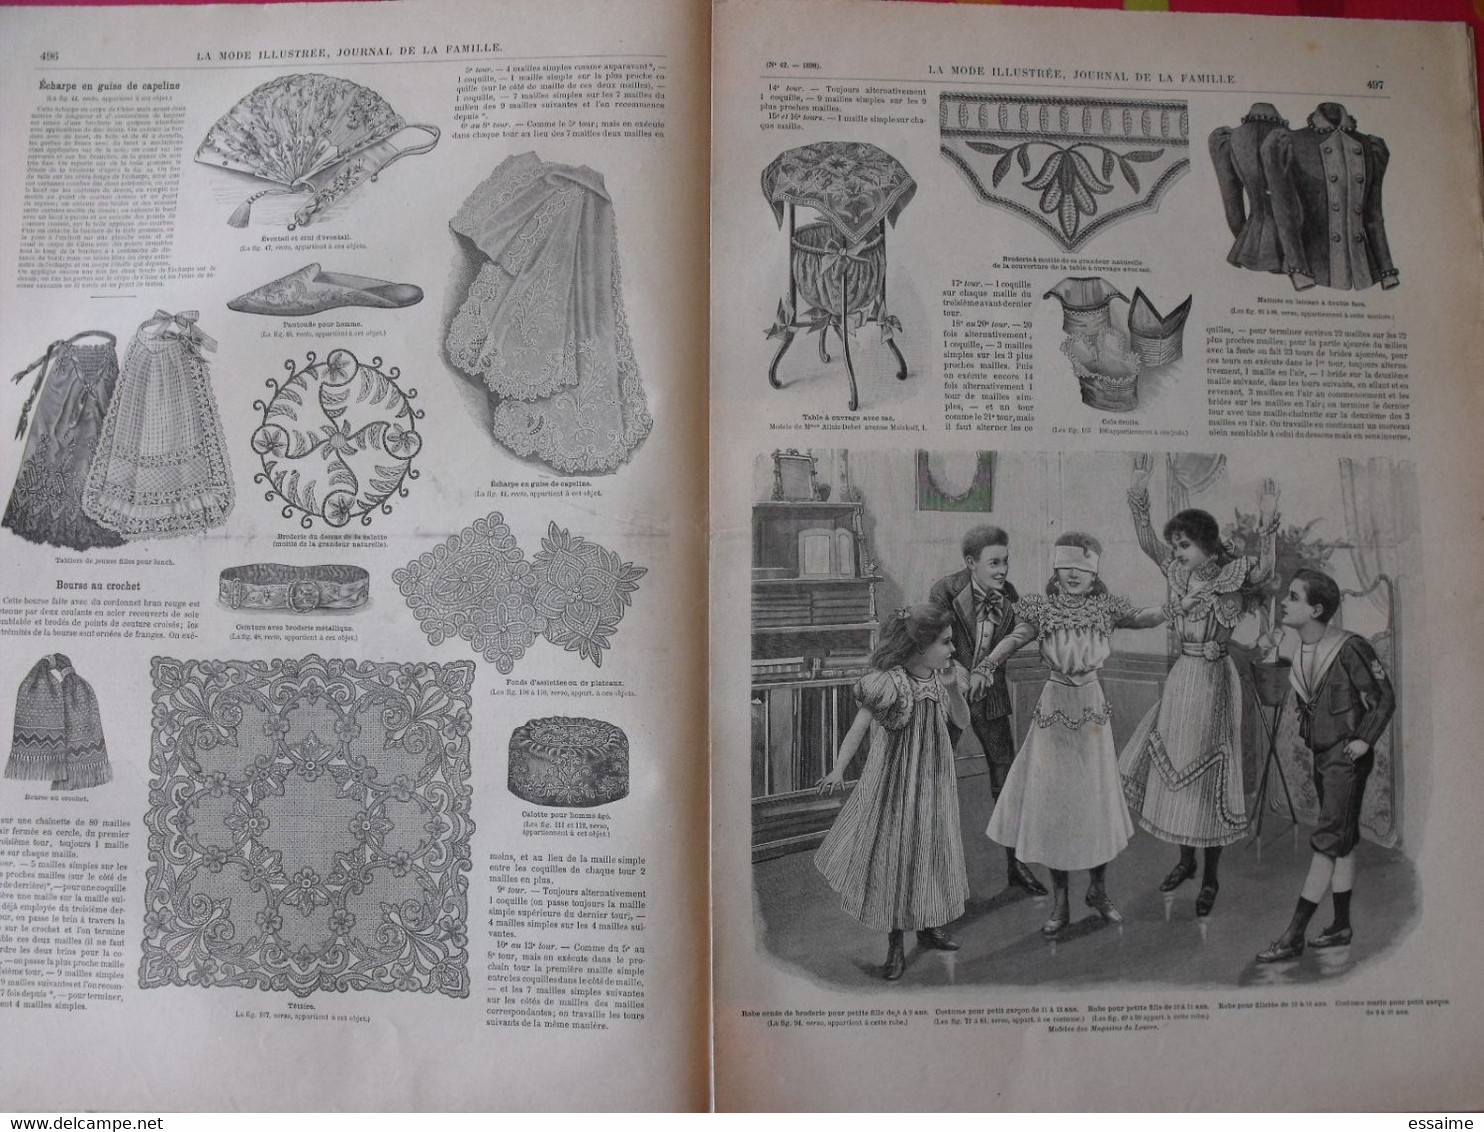 4 revues la mode illustrée, journal de la famille.  n° 40,41,42,43 de 1898. couverture en couleur. jolies gravures